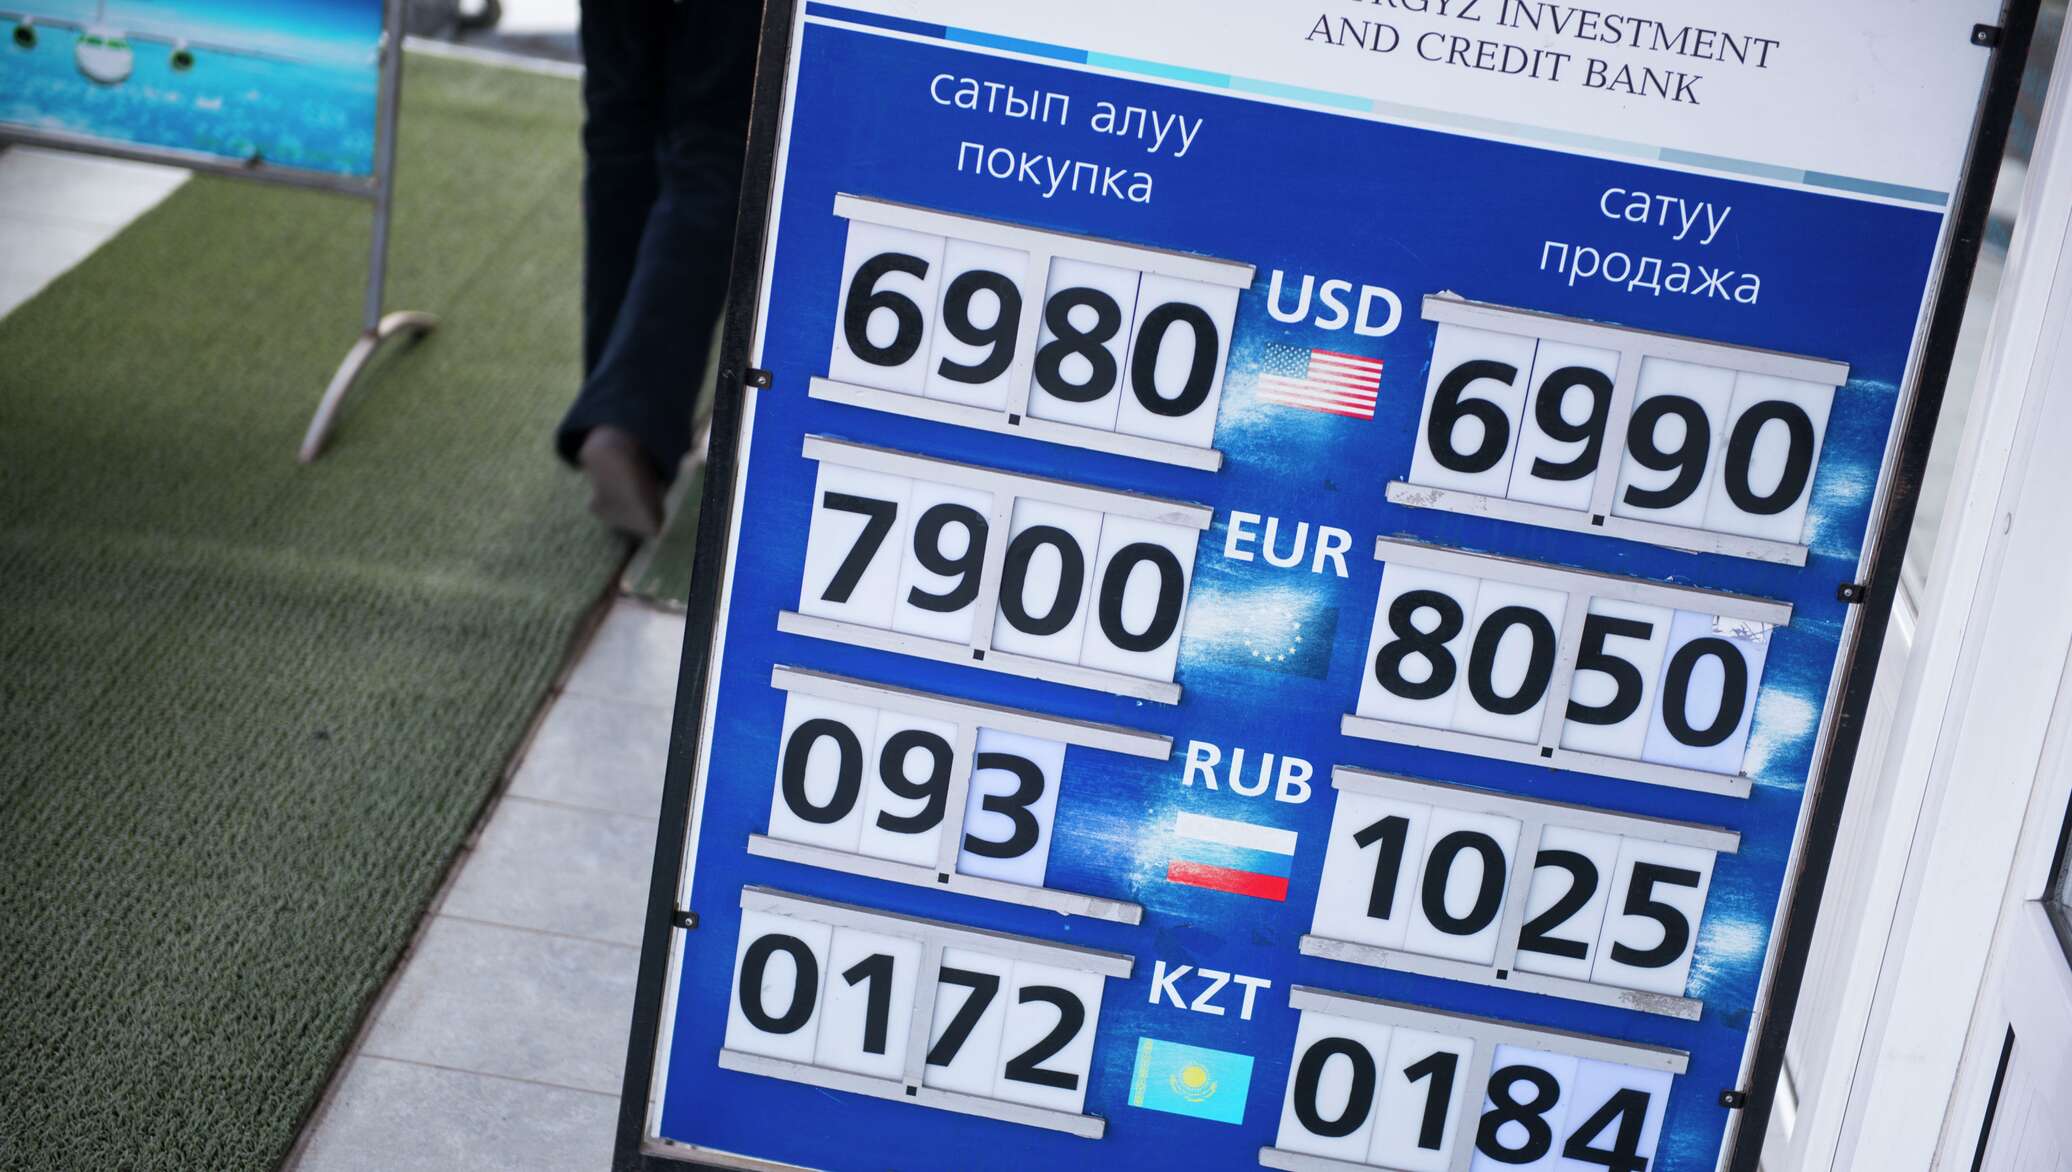 Валюта курс кыргызстан рубль сегодня сом ош. Курсы валют. Валюта Кыргызстана сом. Курсы валют киргизский сом. Валюта Кыргызстана рубль на сом.